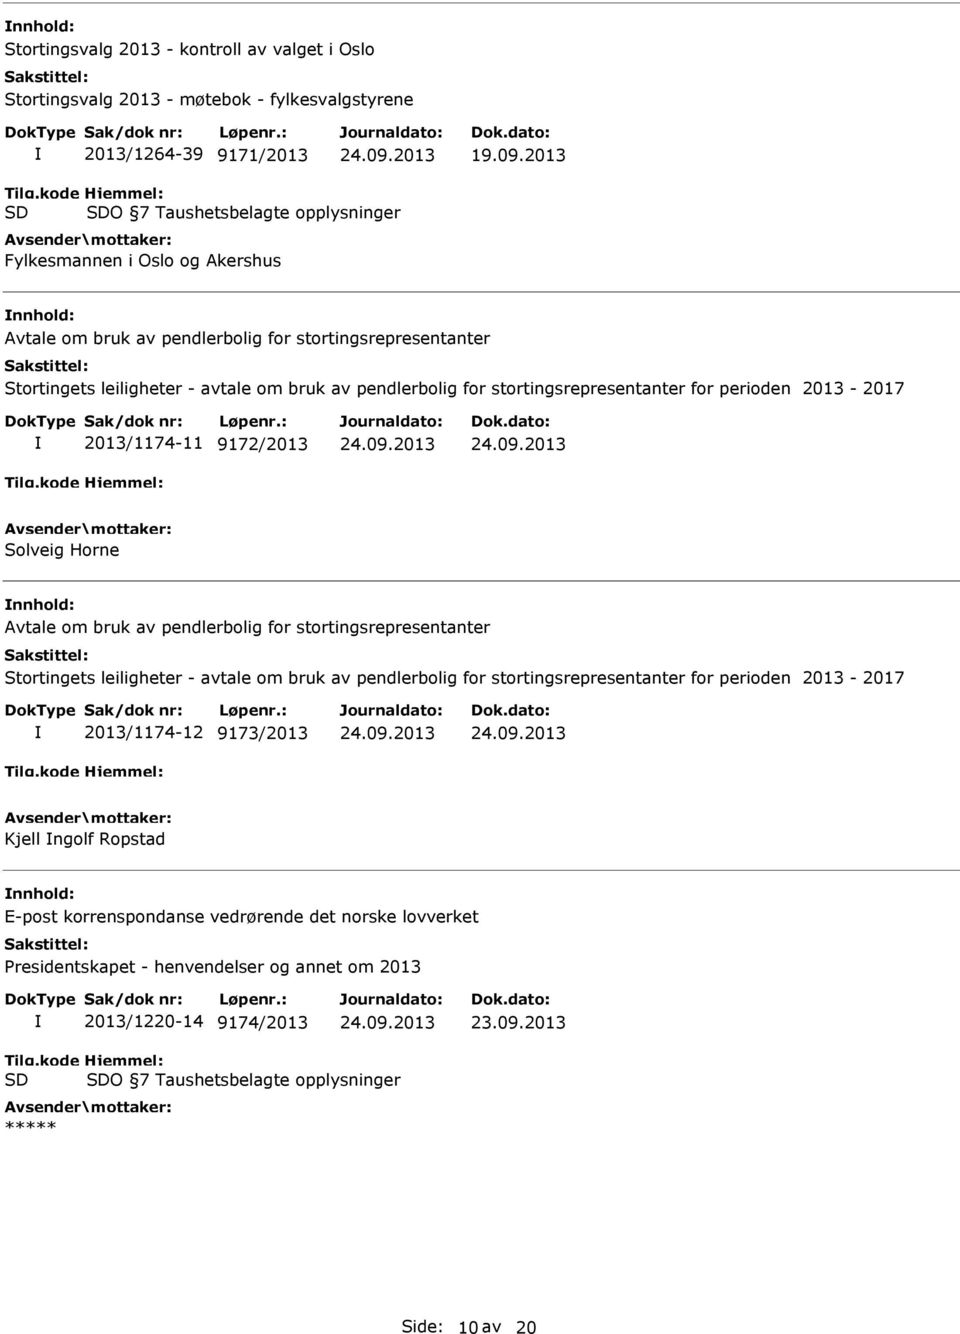 2013 O 7 Taushetsbelagte opplysninger Fylkesmannen i Oslo og Akershus 2013/1174-11 9172/2013 Solveig Horne